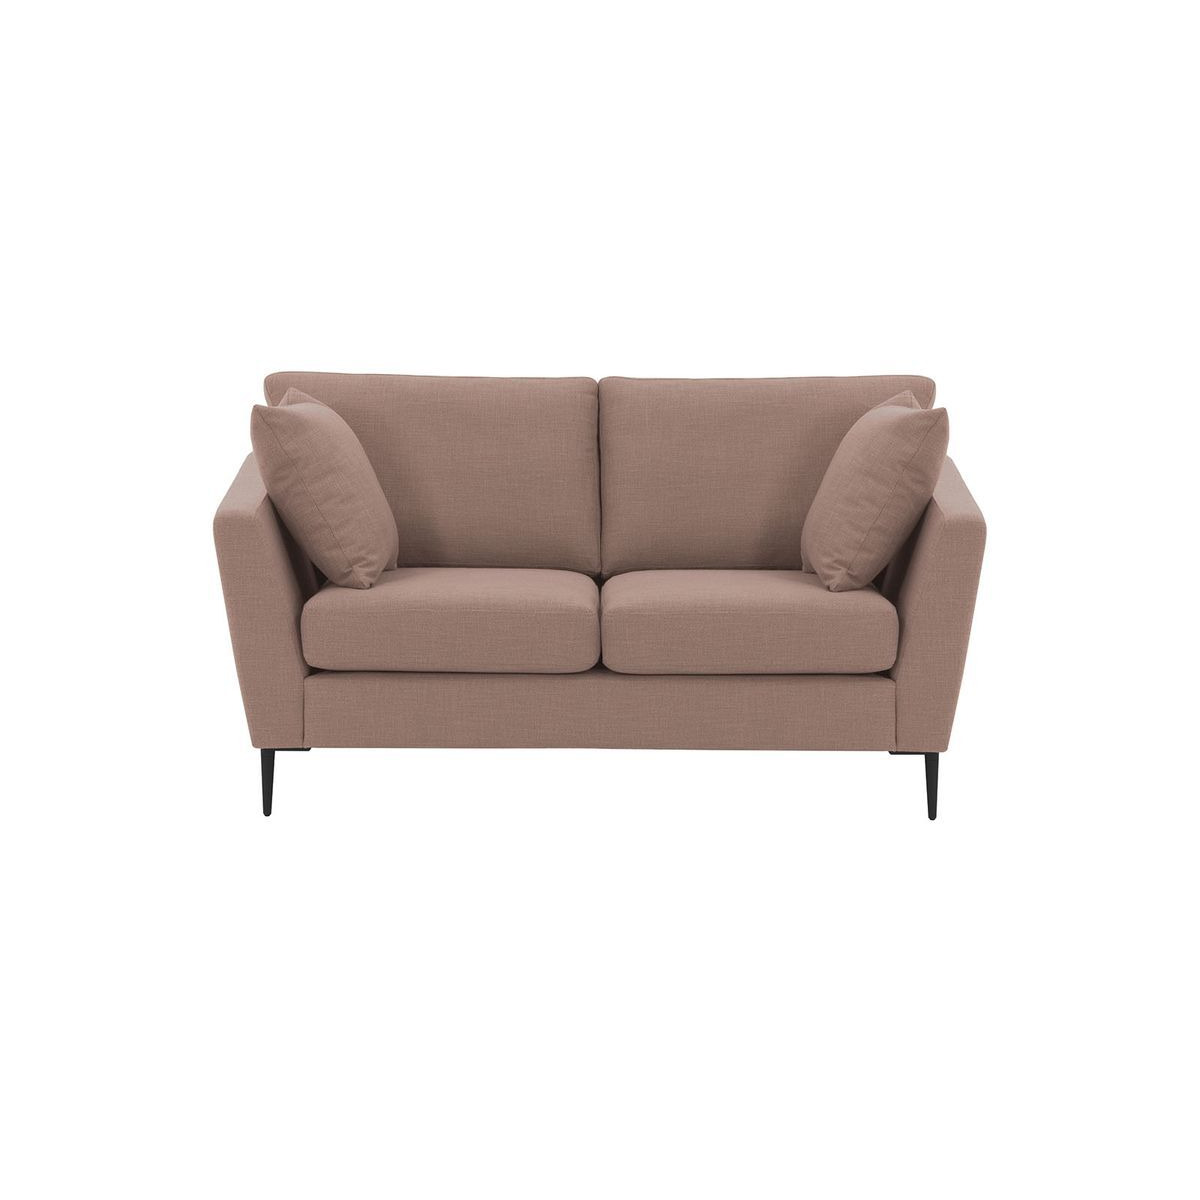 Imani 2 Seater Sofa, pastel pink - image 1